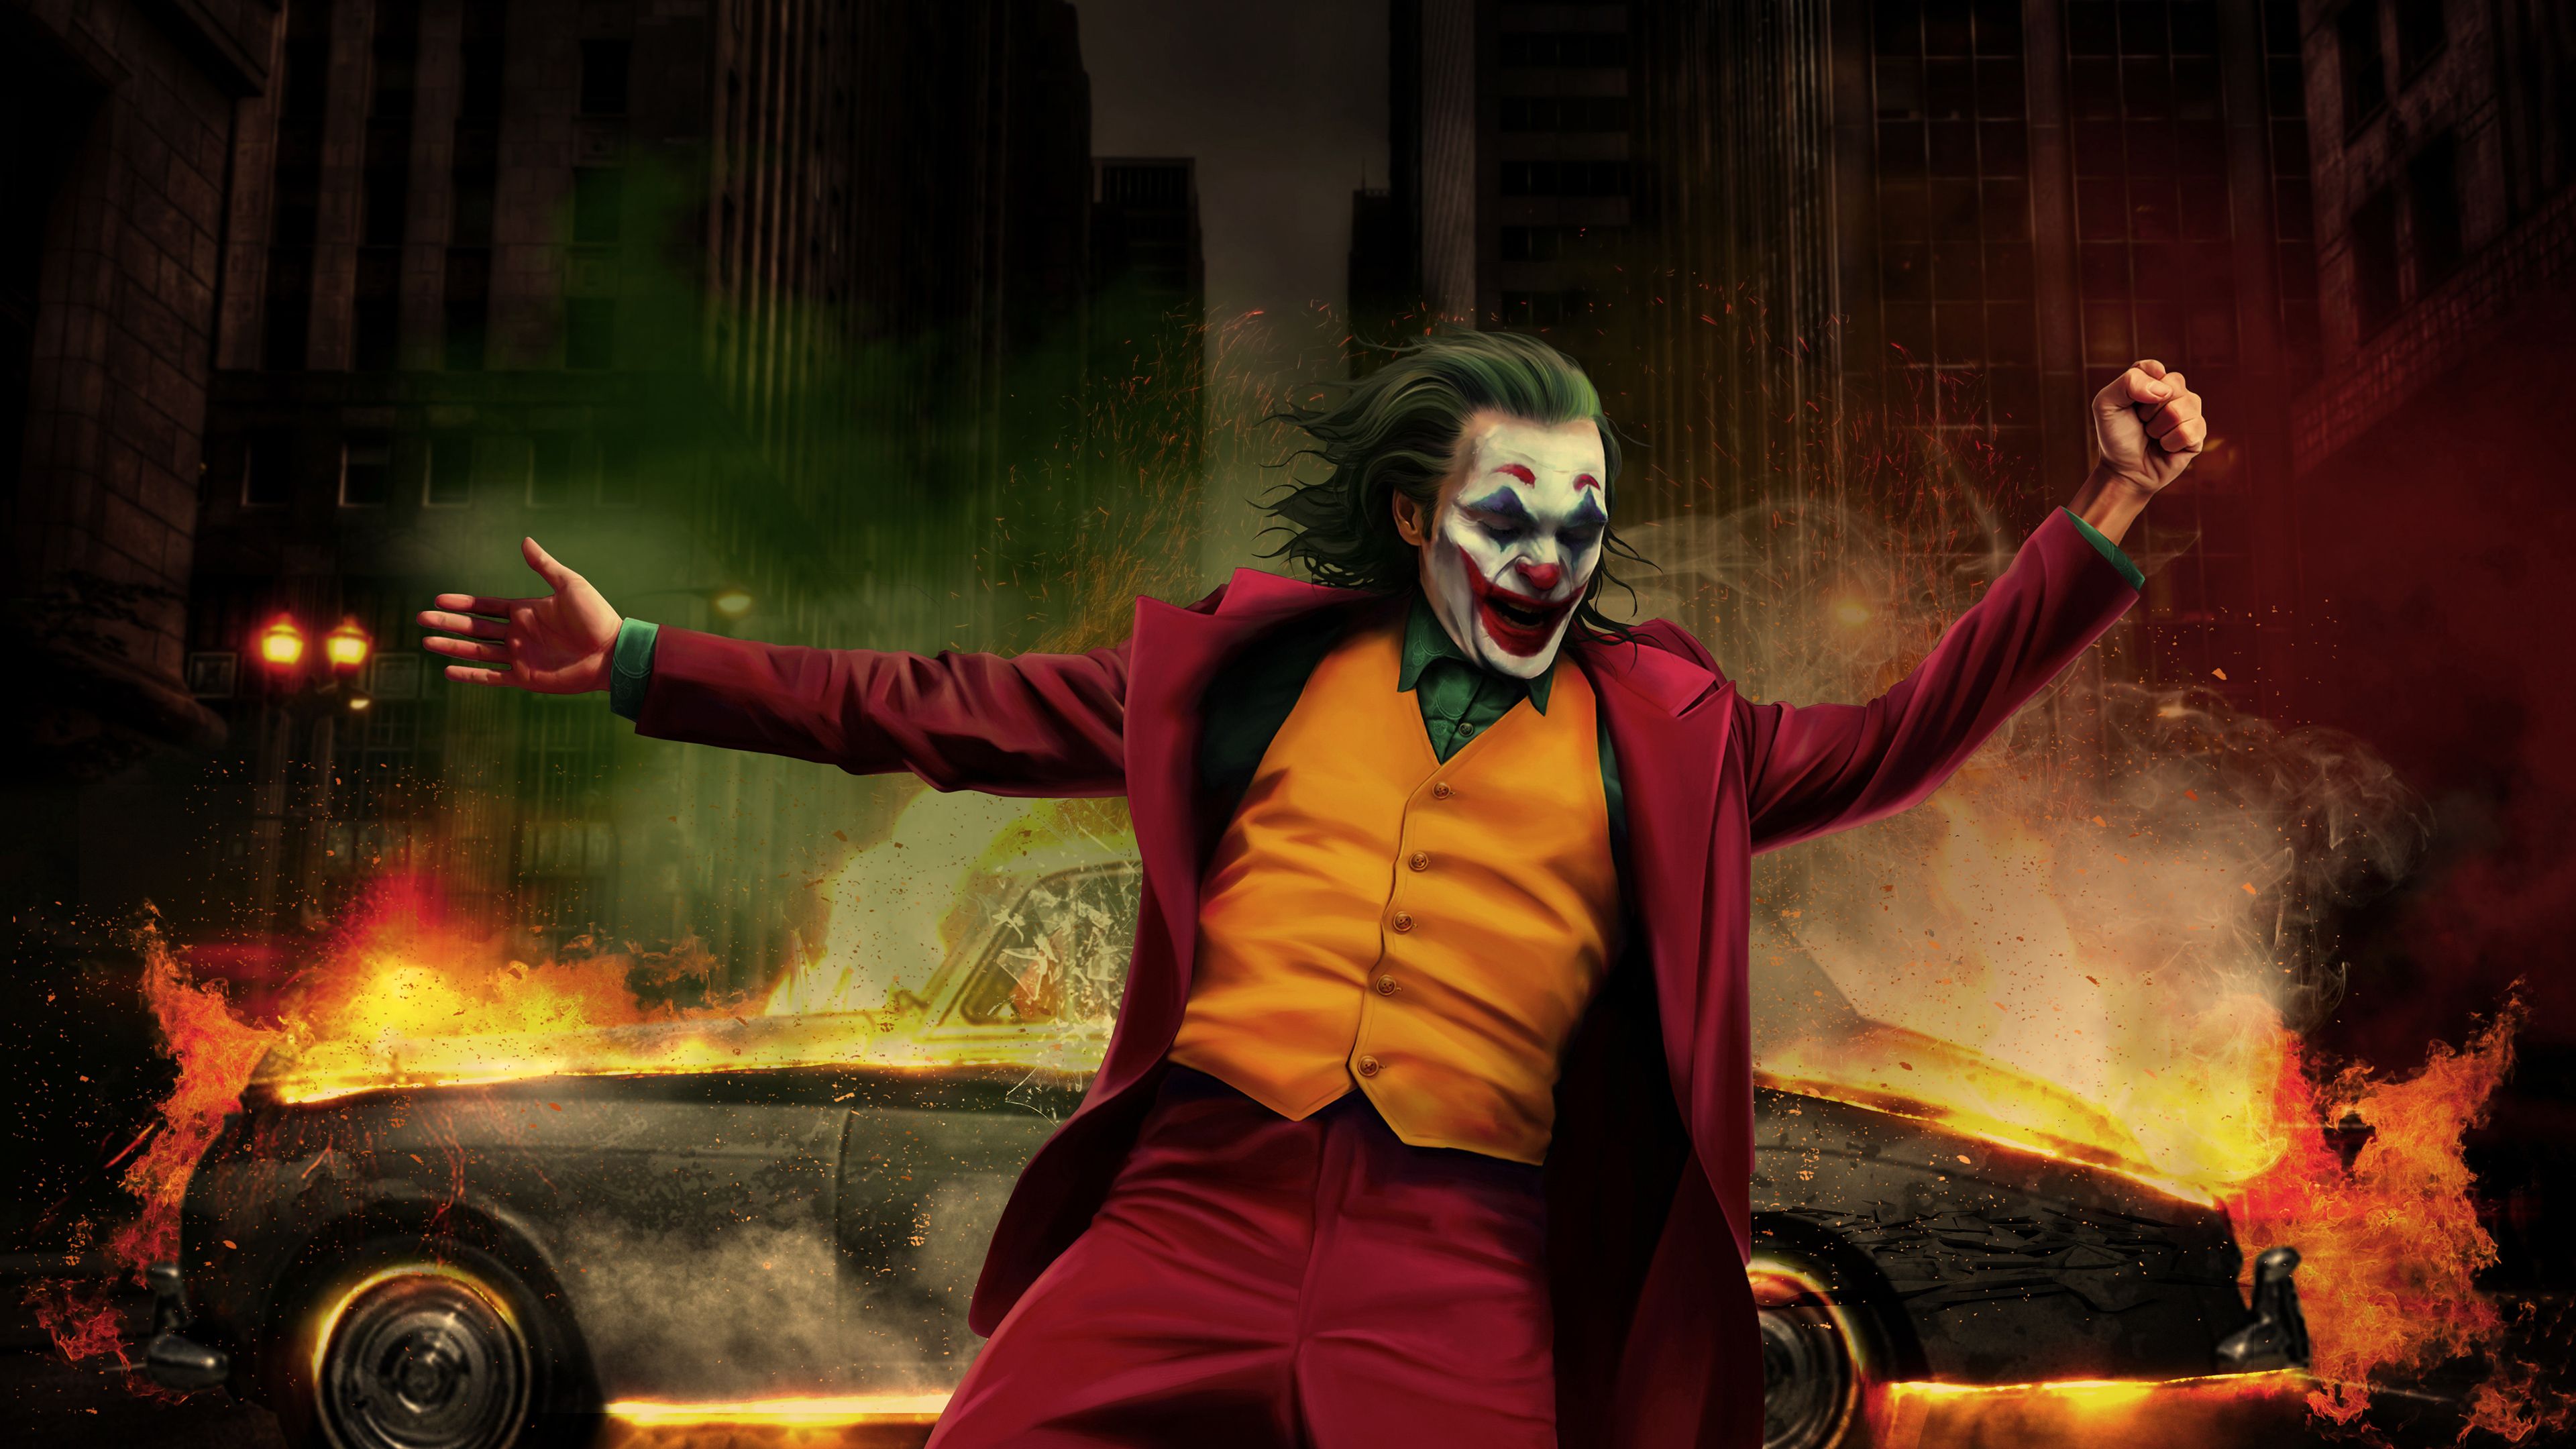 Joker Fanart 2020 Wallpapers